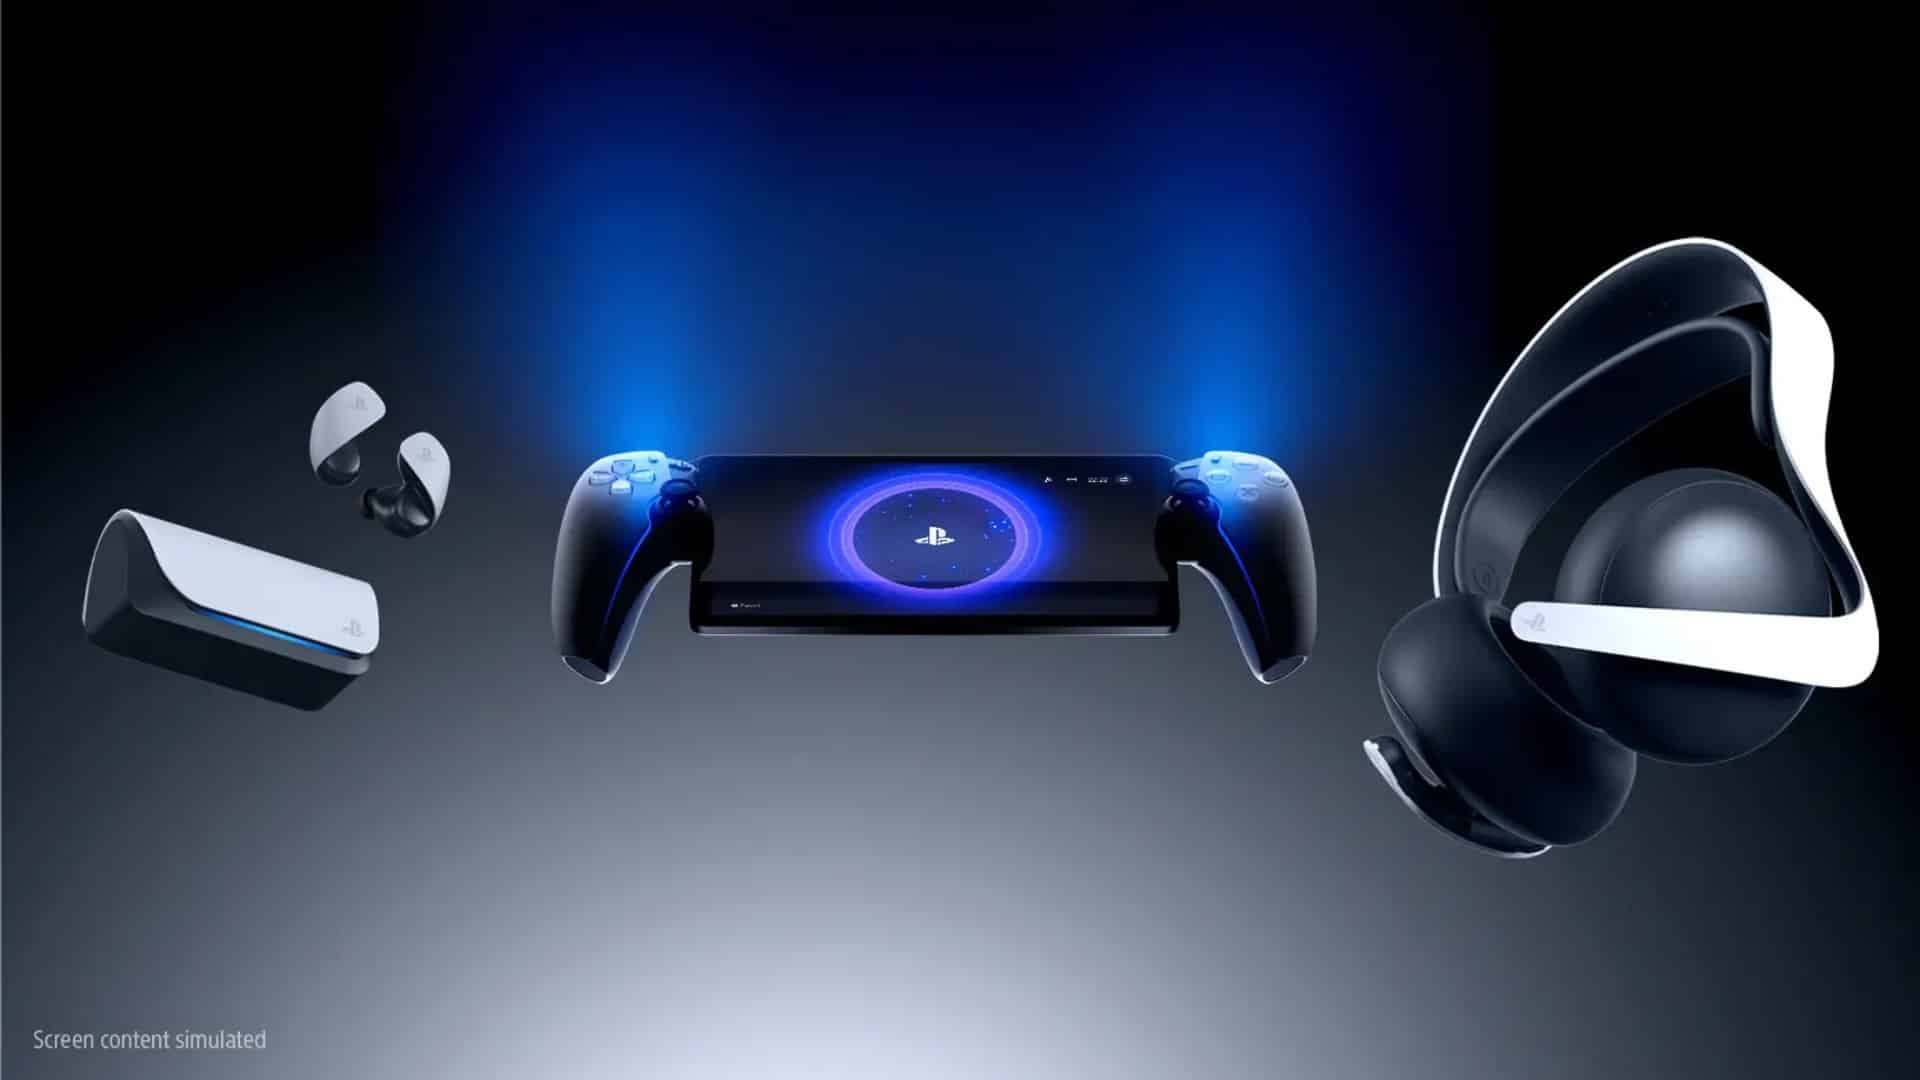 PlayStation Portal 2